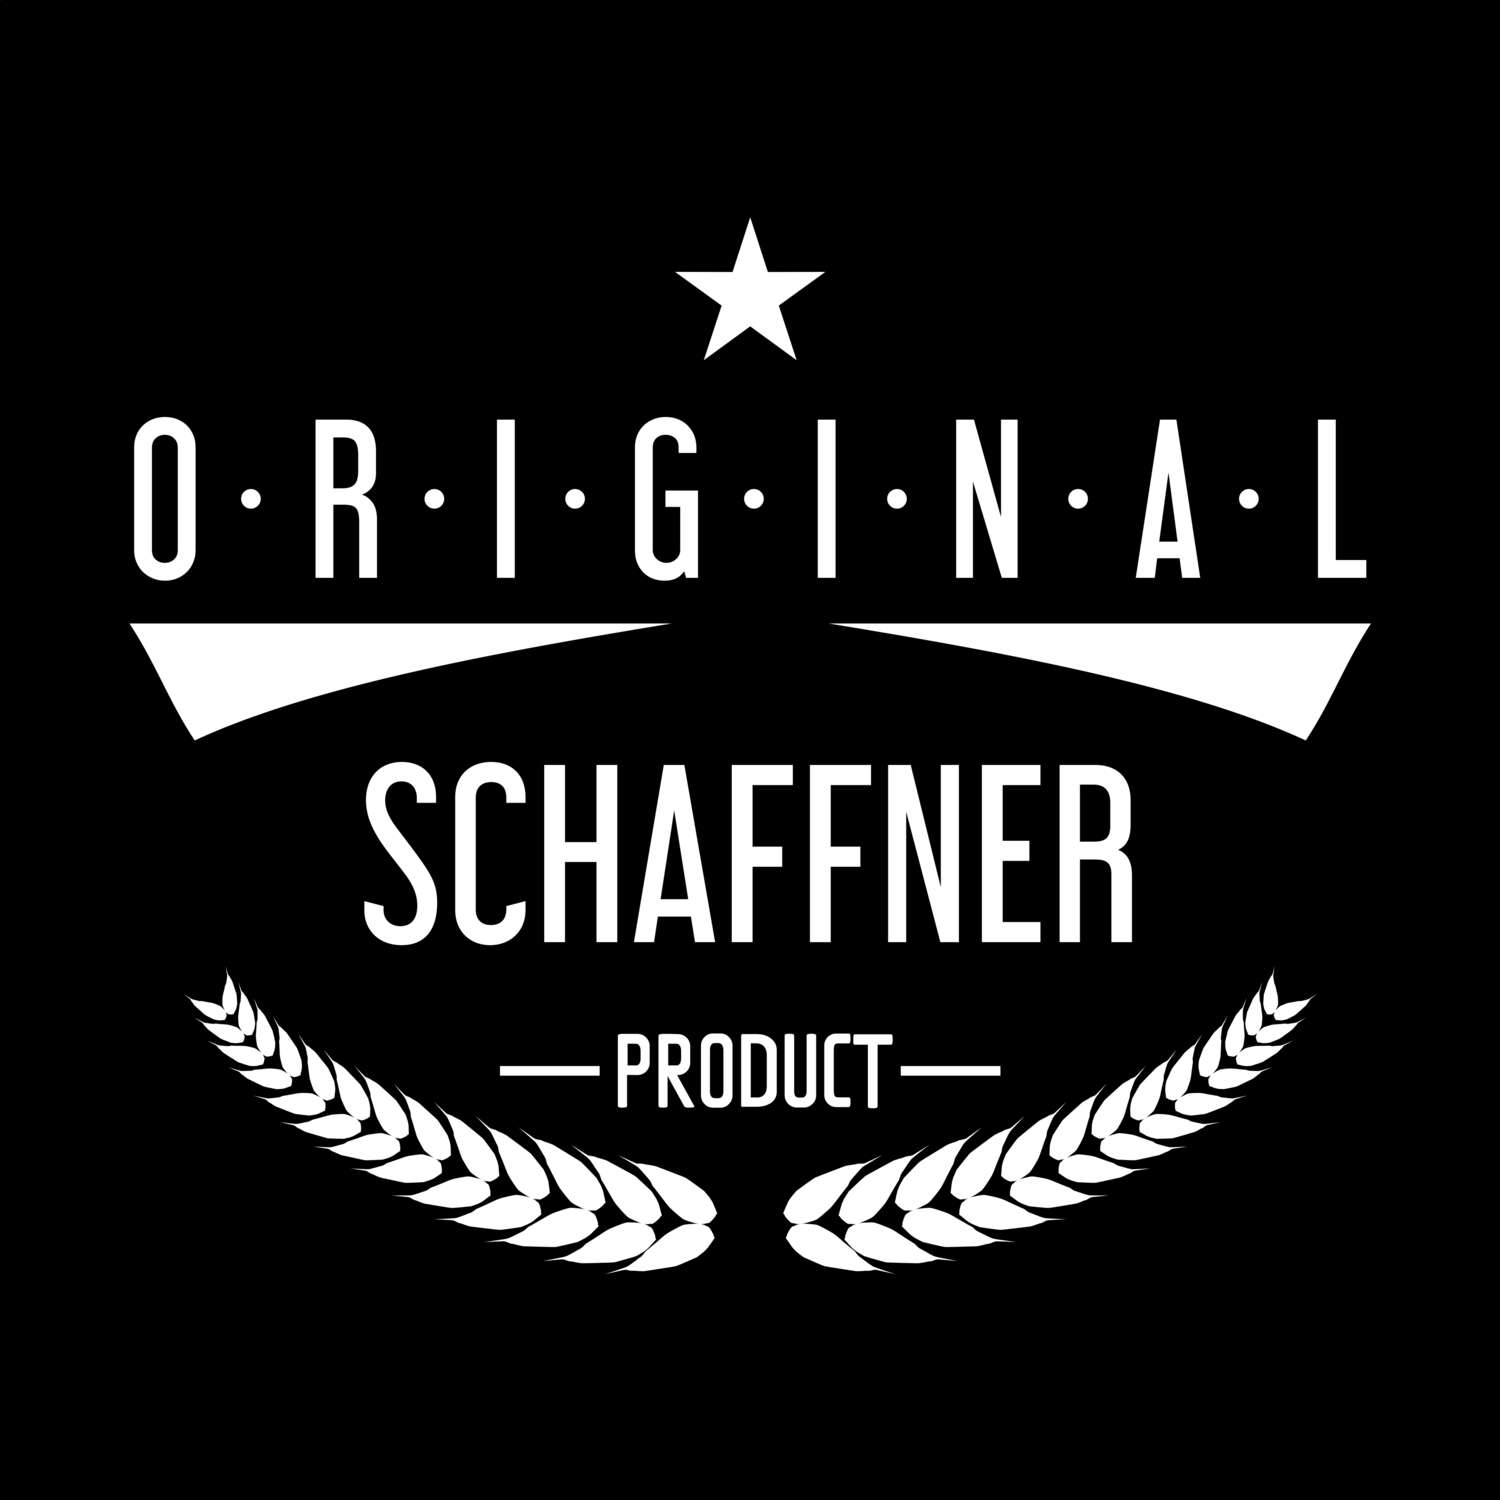 Schaffner T-Shirt »Original Product«